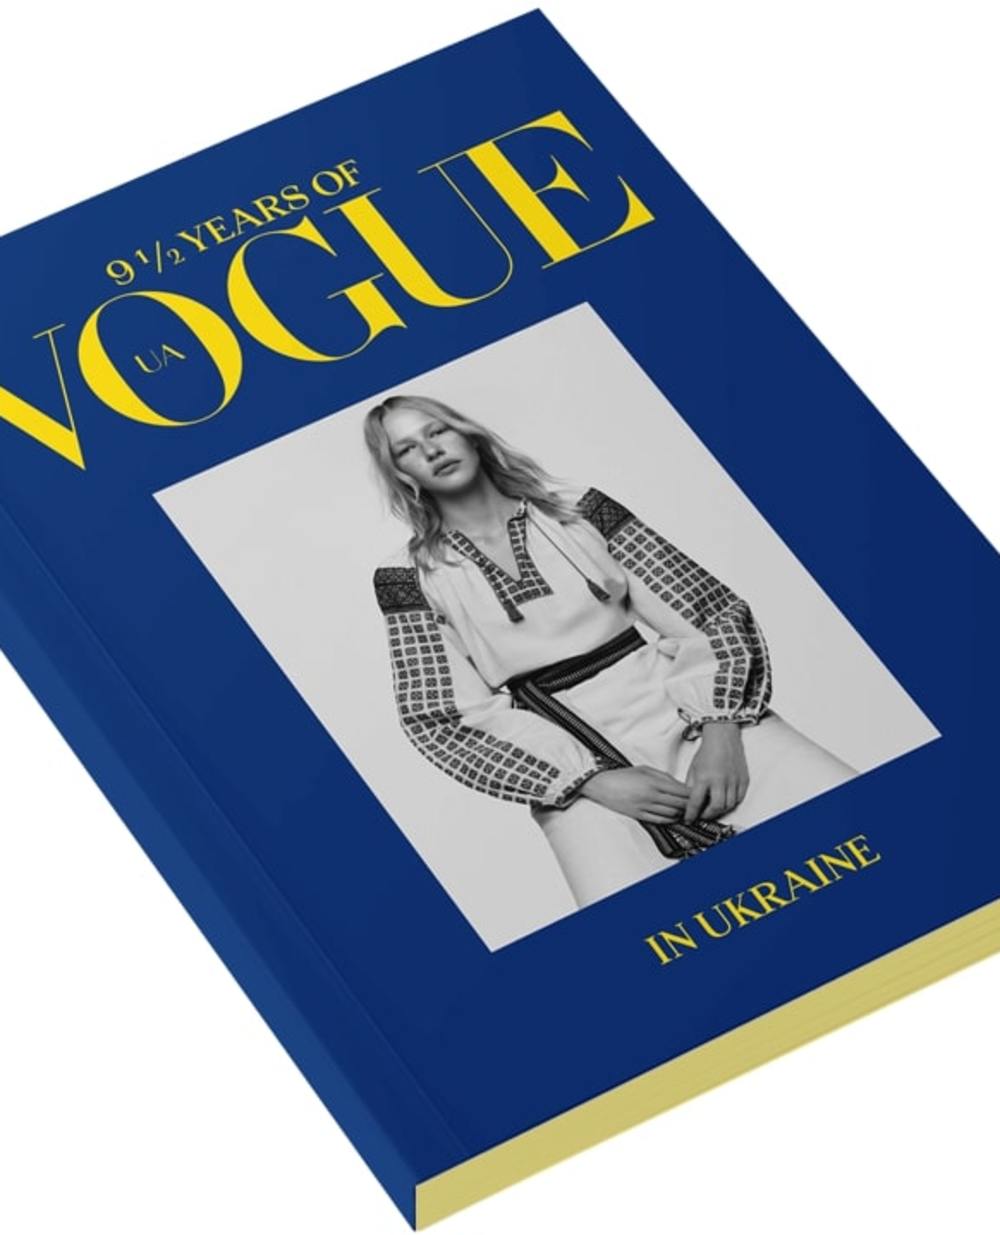 9 ½ лет Vogue в Украине Vogue VOGUE-BOOK, синий цвет • Купить в интернет-магазине Kameron